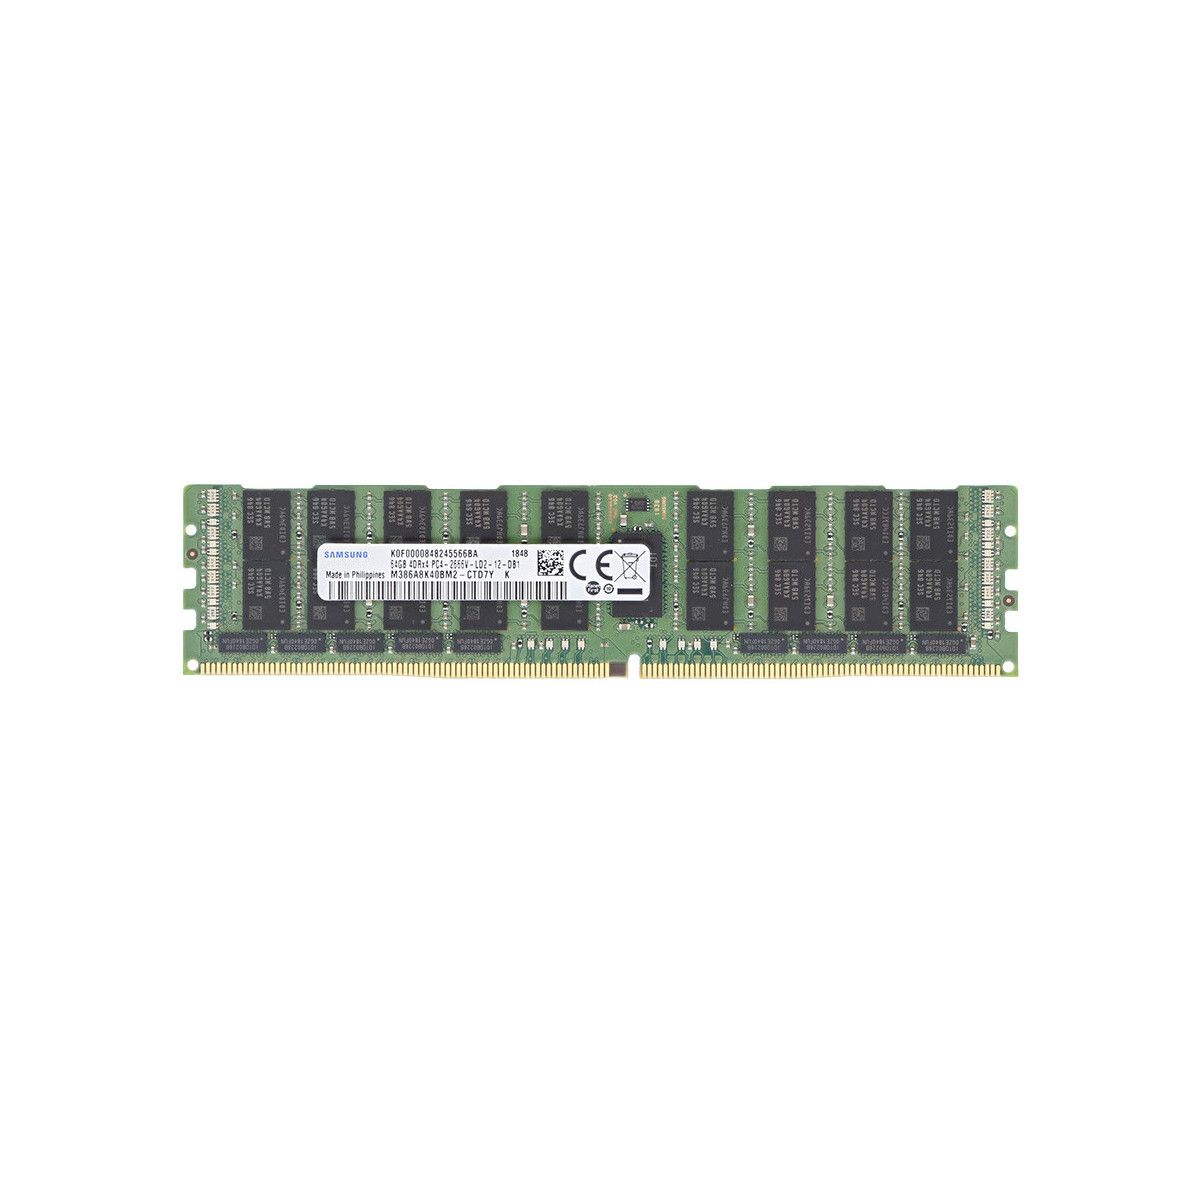 815101-B21-MS - Mem-Star 1x 64GB DDR4-2666 LRDIMM PC4-21300V-L - Mem-Star Compatible OEM Memory 1 - Memstar 